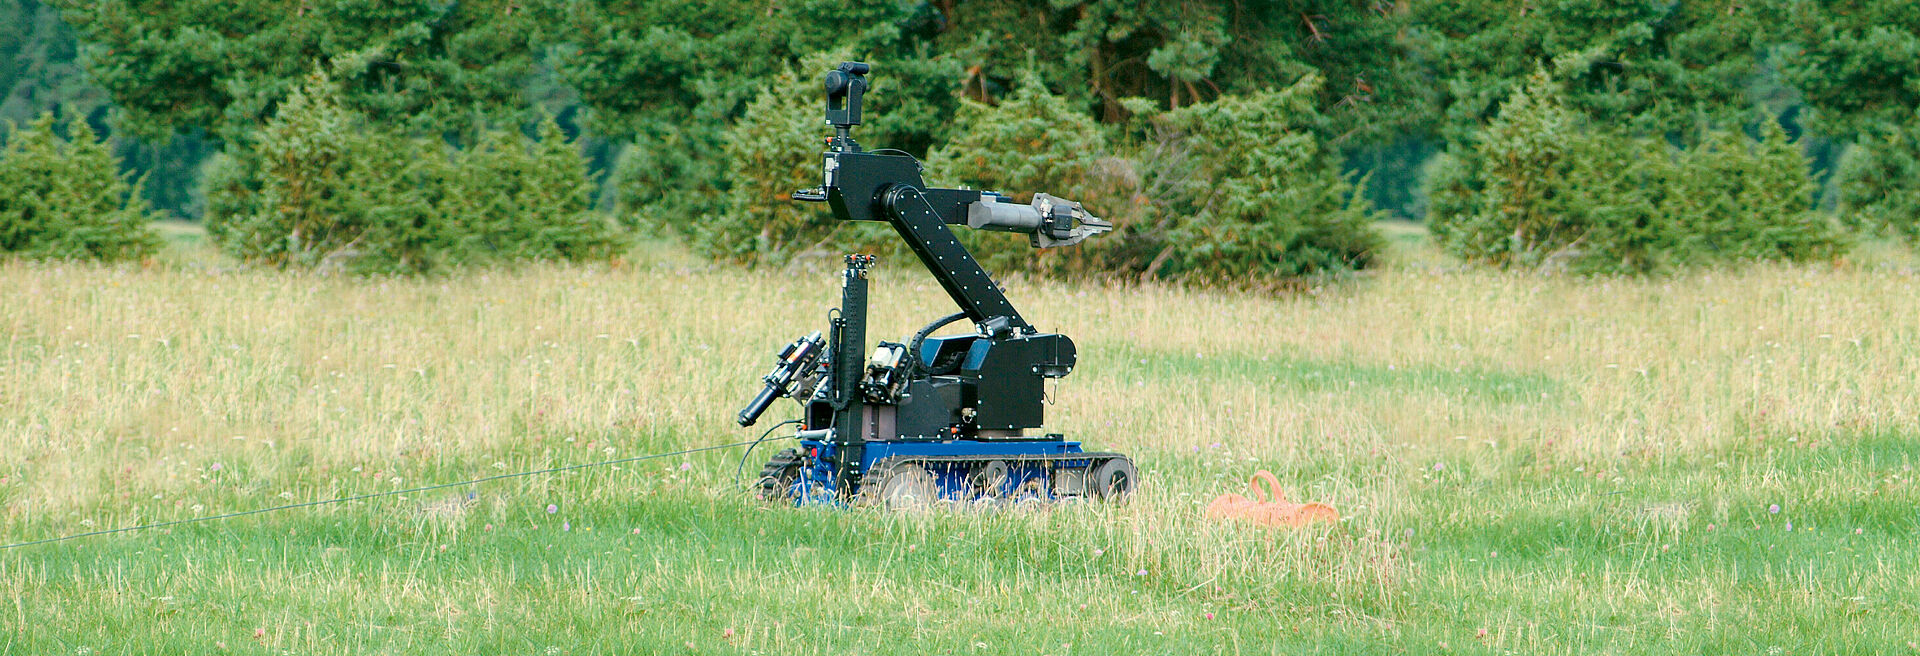 Motori CC continua in robot mobile fuoristrada su battistrada a cingoli